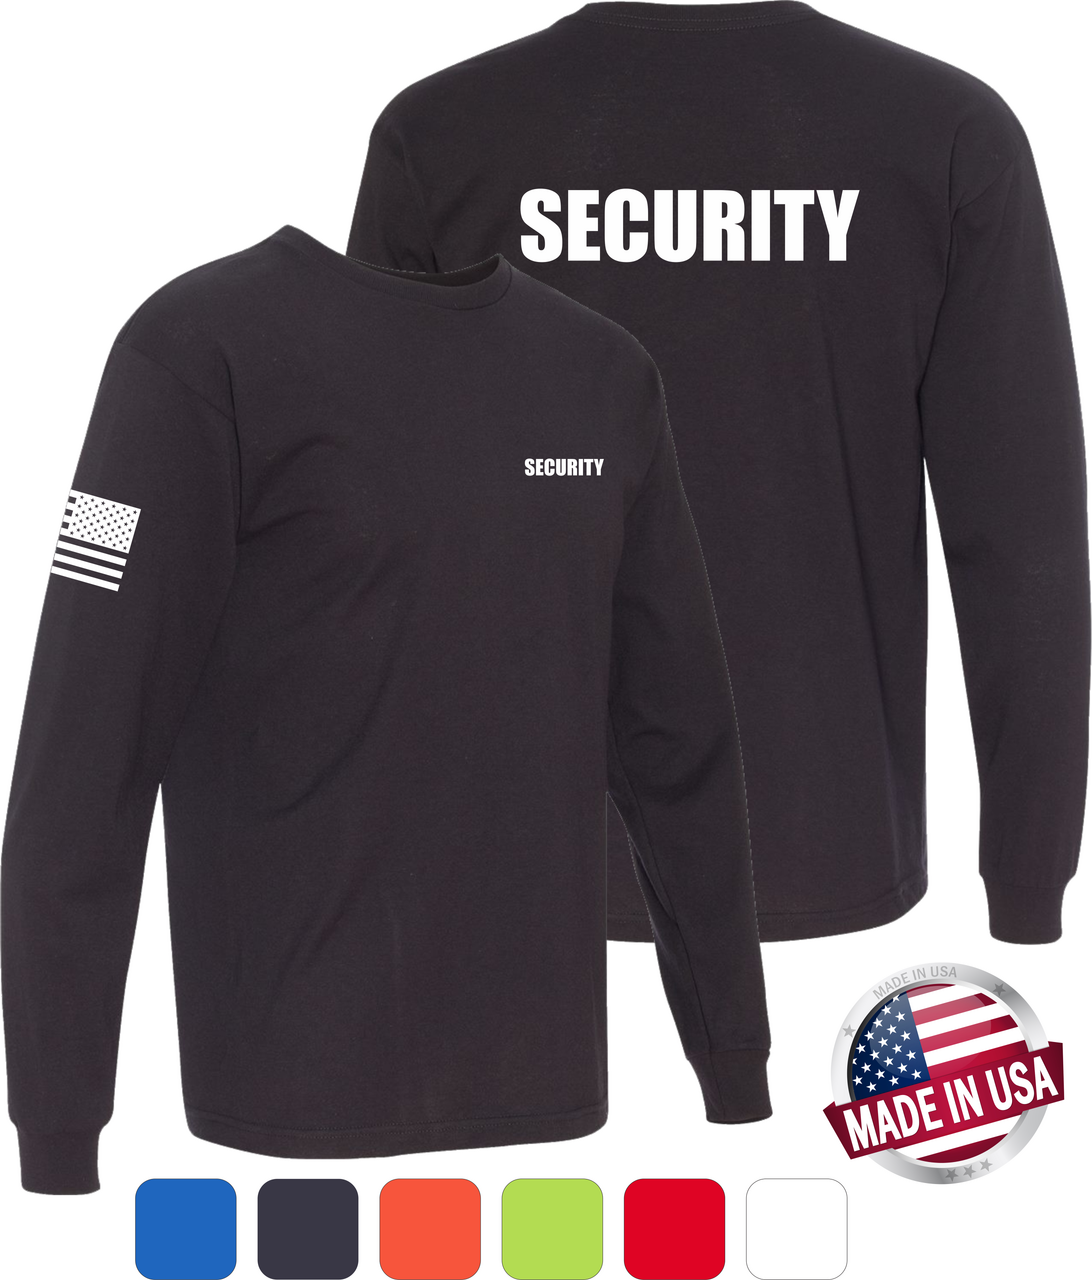 Black 'Security' Shirt Long Sleeve SECURITY Shirt S 4XL 